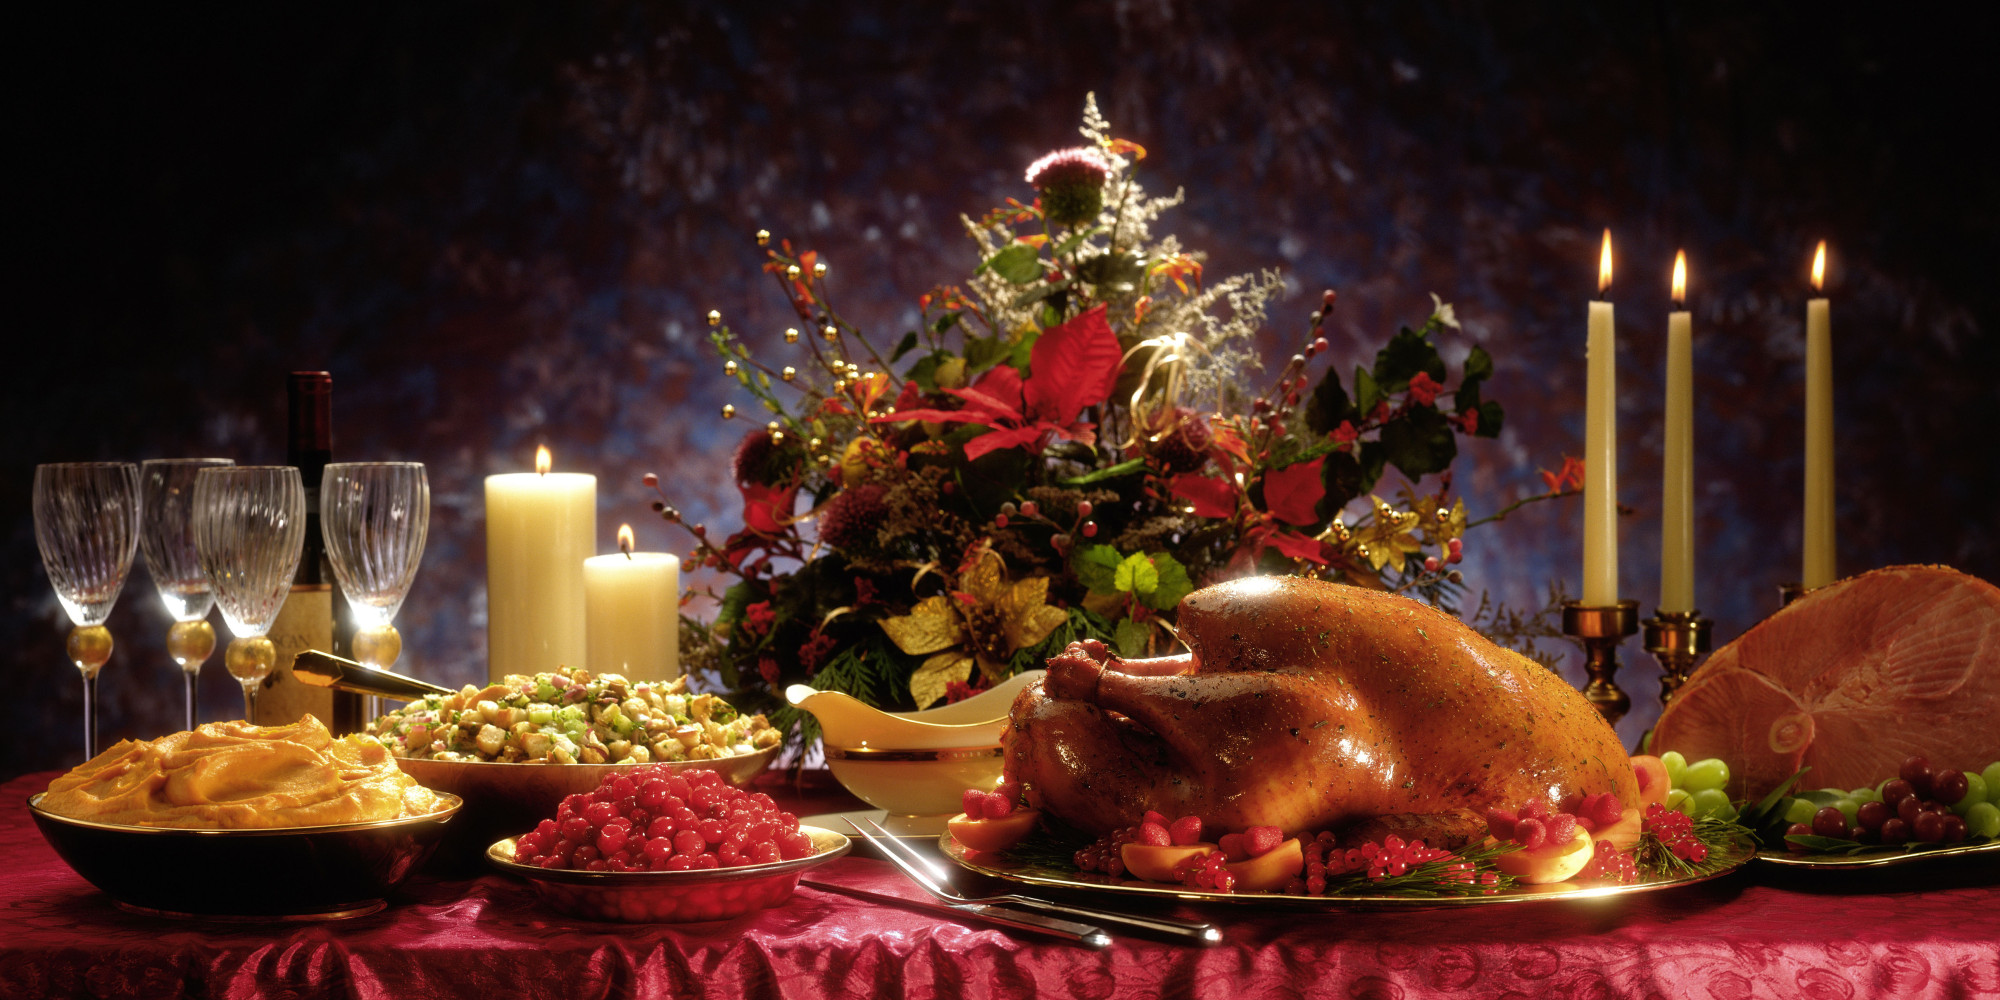 https://www.clcdenver.org/wp-content/uploads/2015/11/Thanksgiving-turkey-dinner-background.jpg